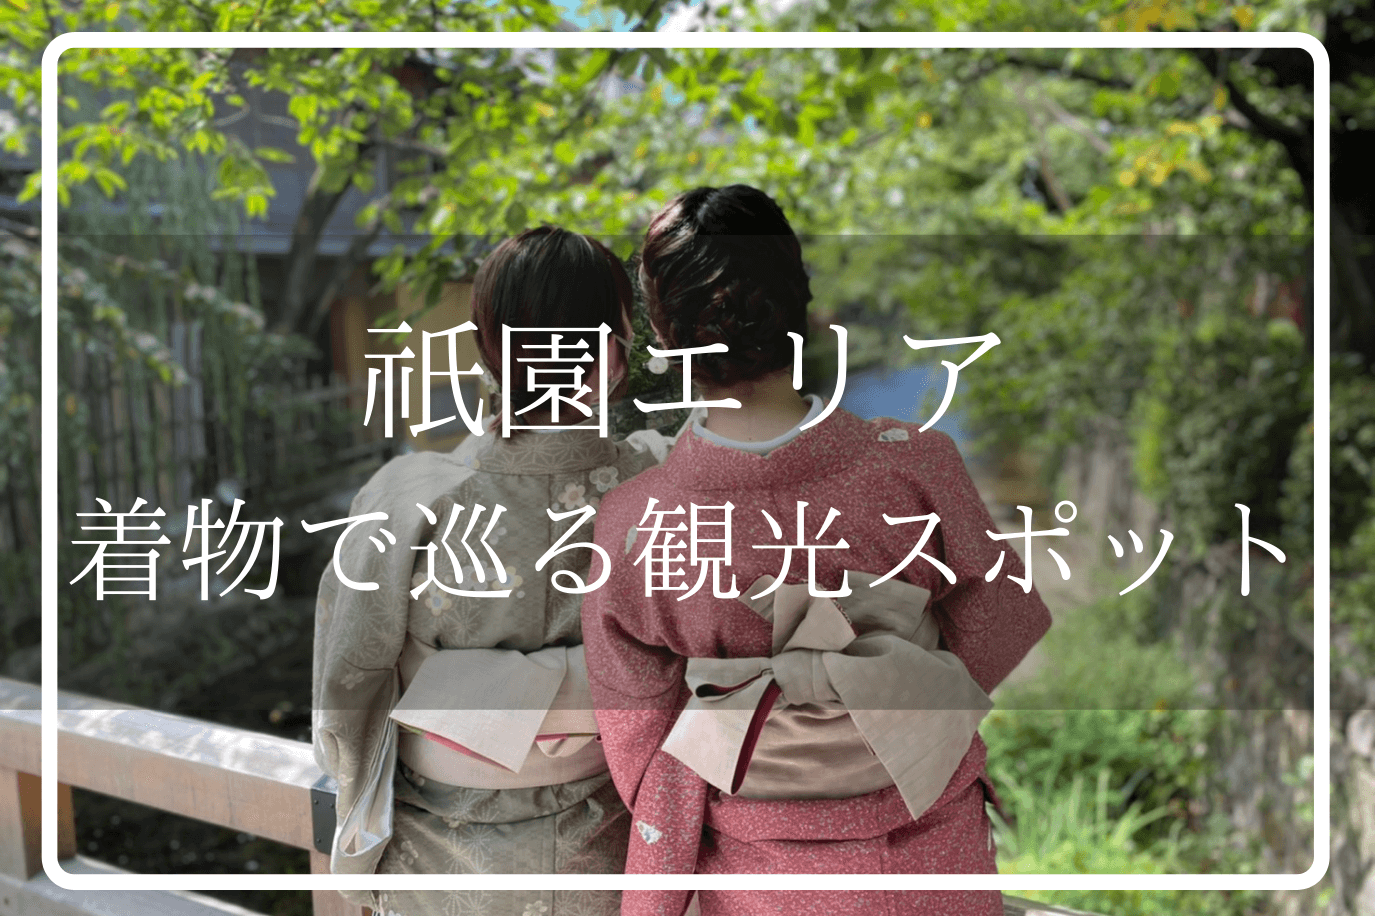 京都祇園の着物観光記事のアイキャッチ